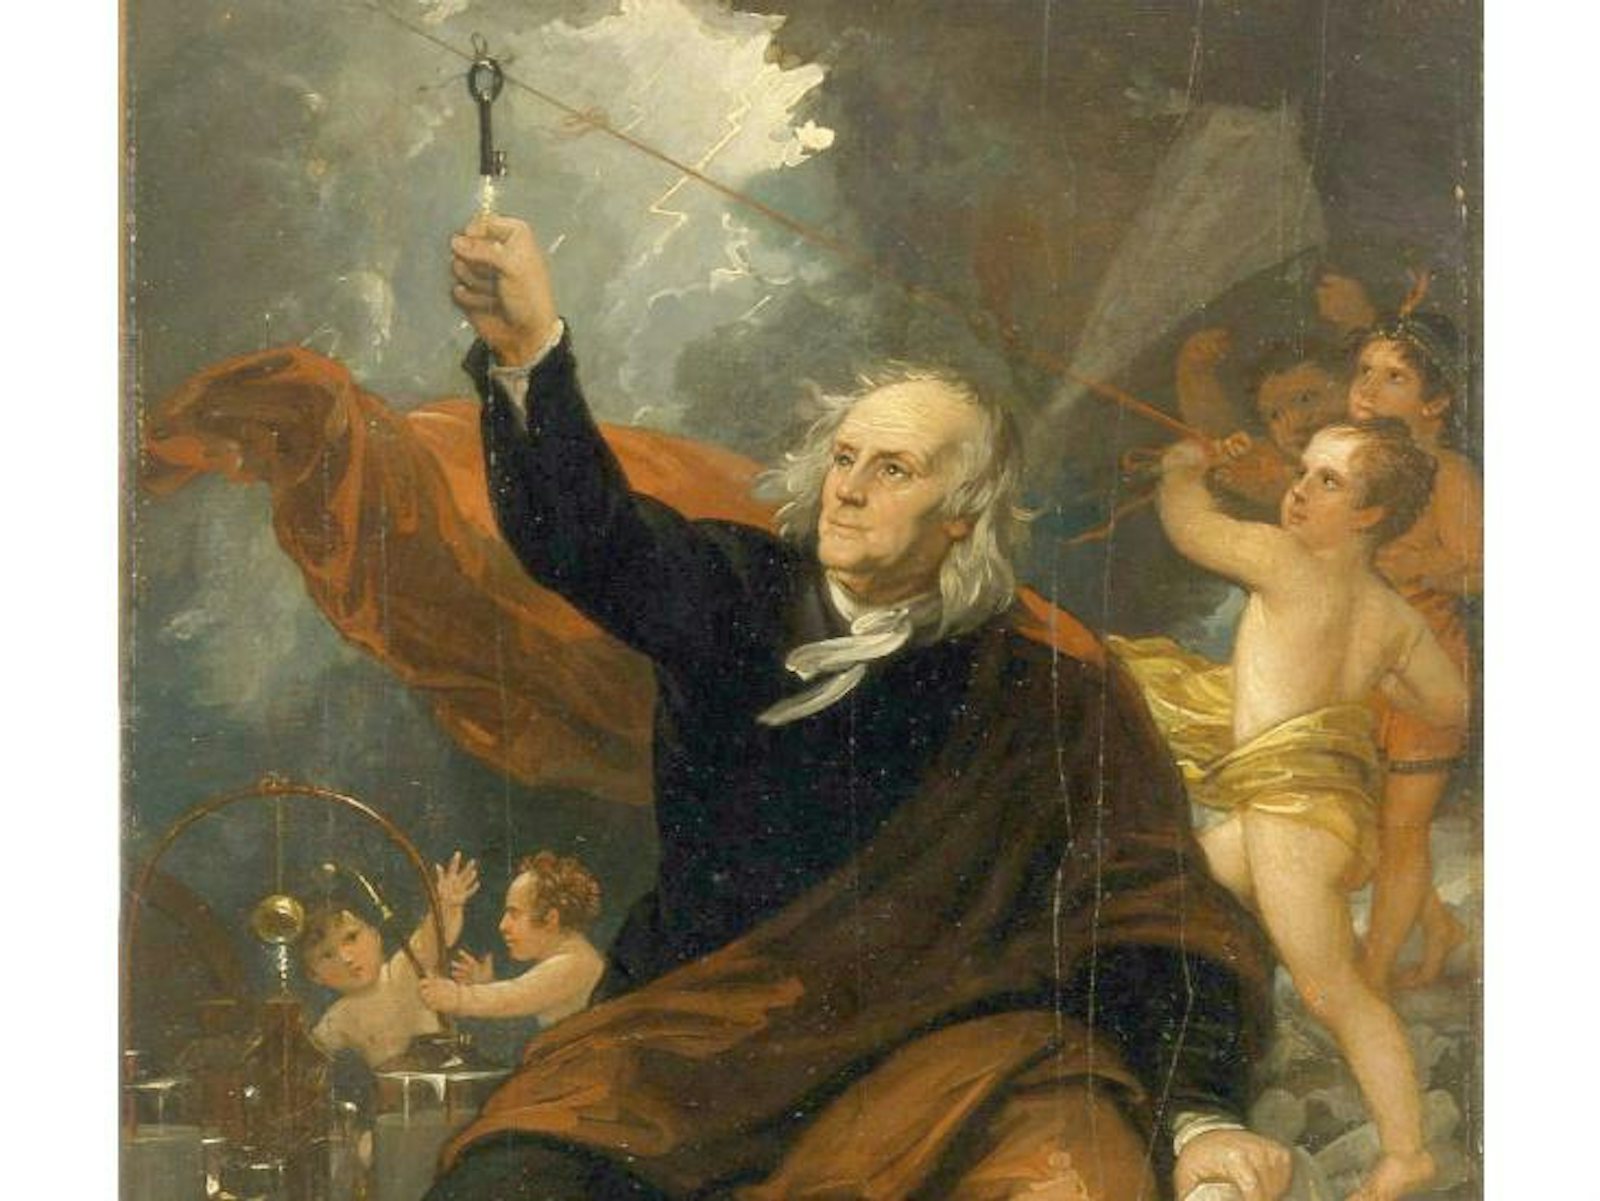 Benjamin Franklin kite key